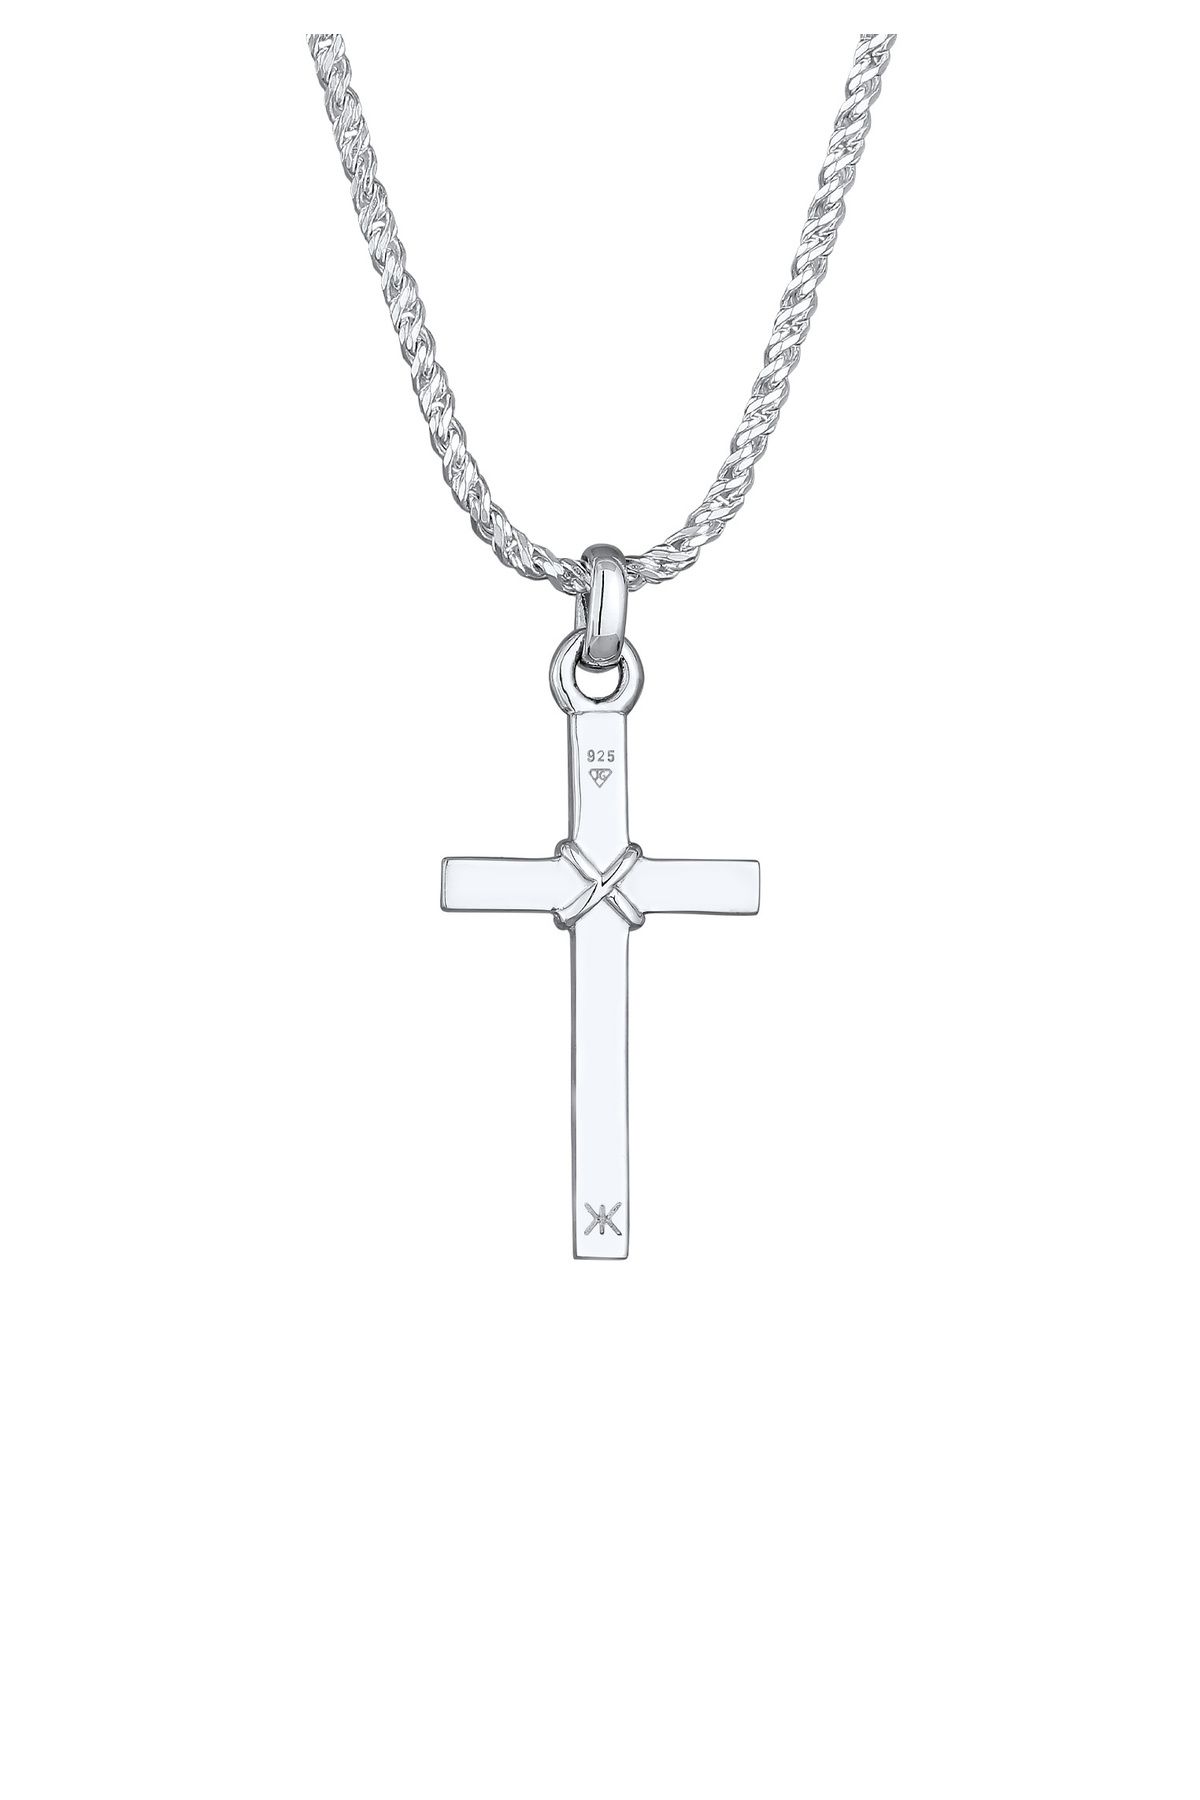 KUZZOI Halskette Herren Kreuz Trendyol Flach - Silber Kordelkette 925